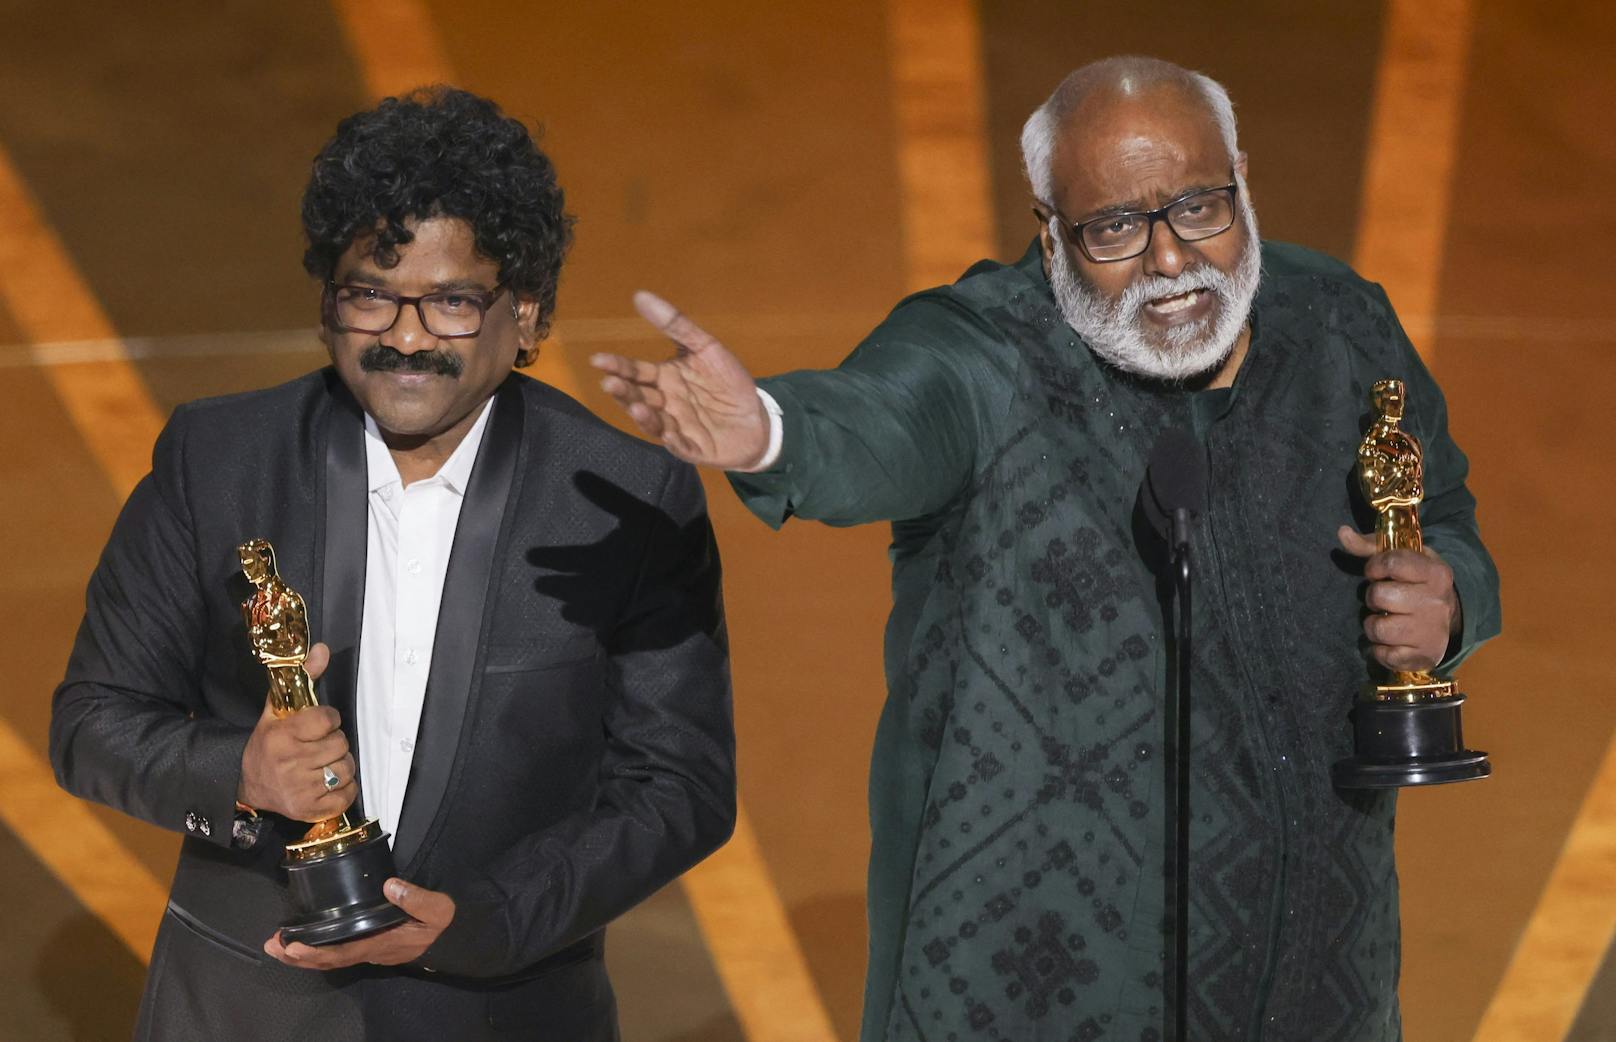 M.M. Keeravaani und Chandrabose freuen sich über den Oscar für "Bester Song". ("Naatu Naatu" von "RRR")